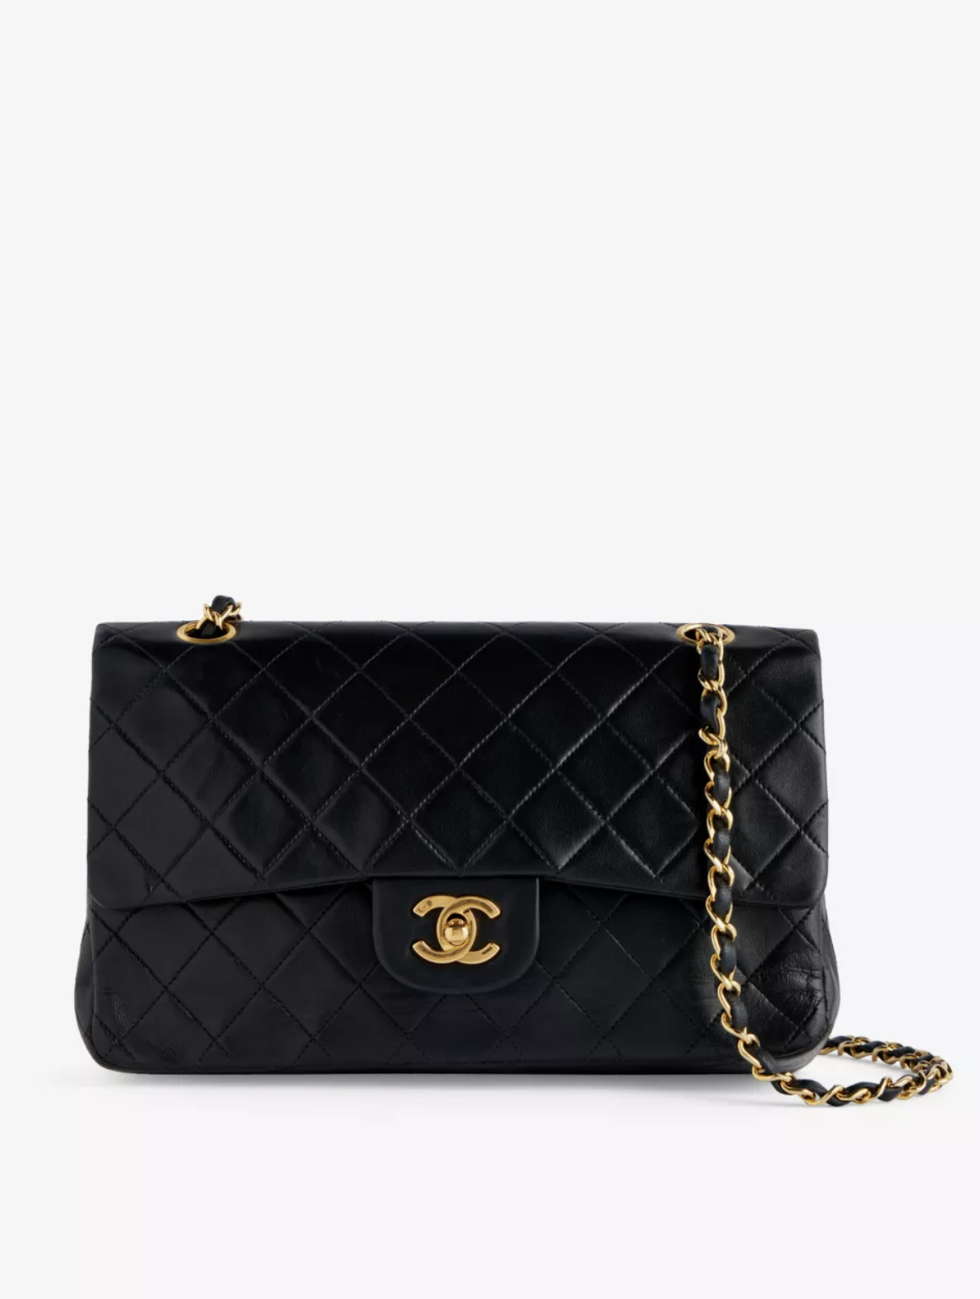 Pre-loved Chanel Medium Quilted Leather Shoulder Bag